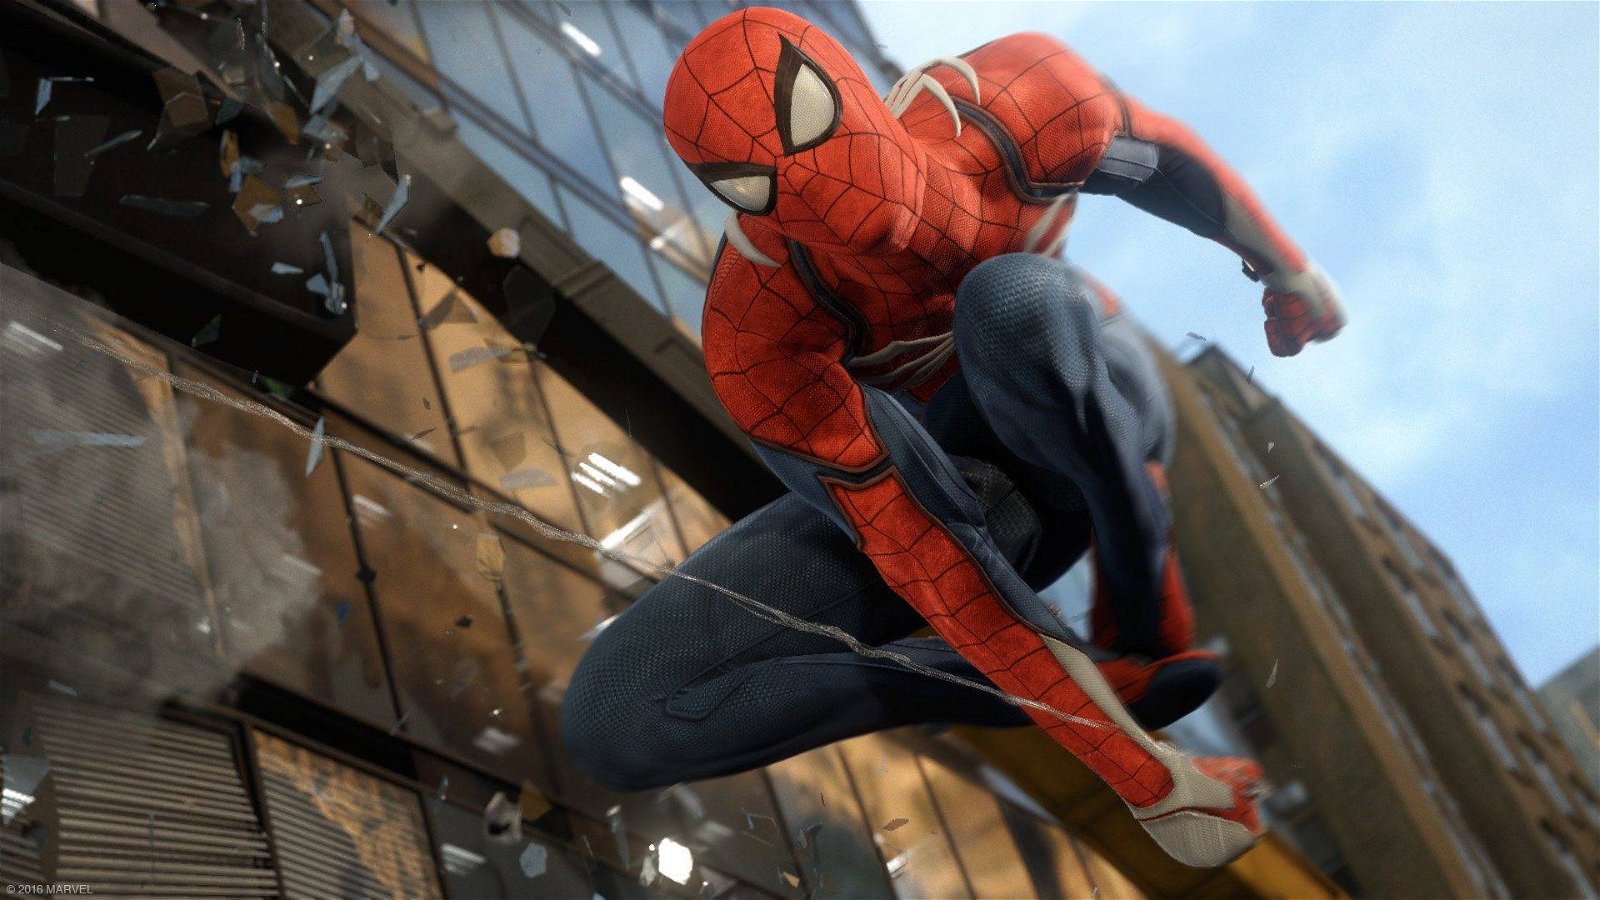 Immagine di Marvel's Spider-Man per PC già disponibile con oltre il 20% di sconto su Eneba!